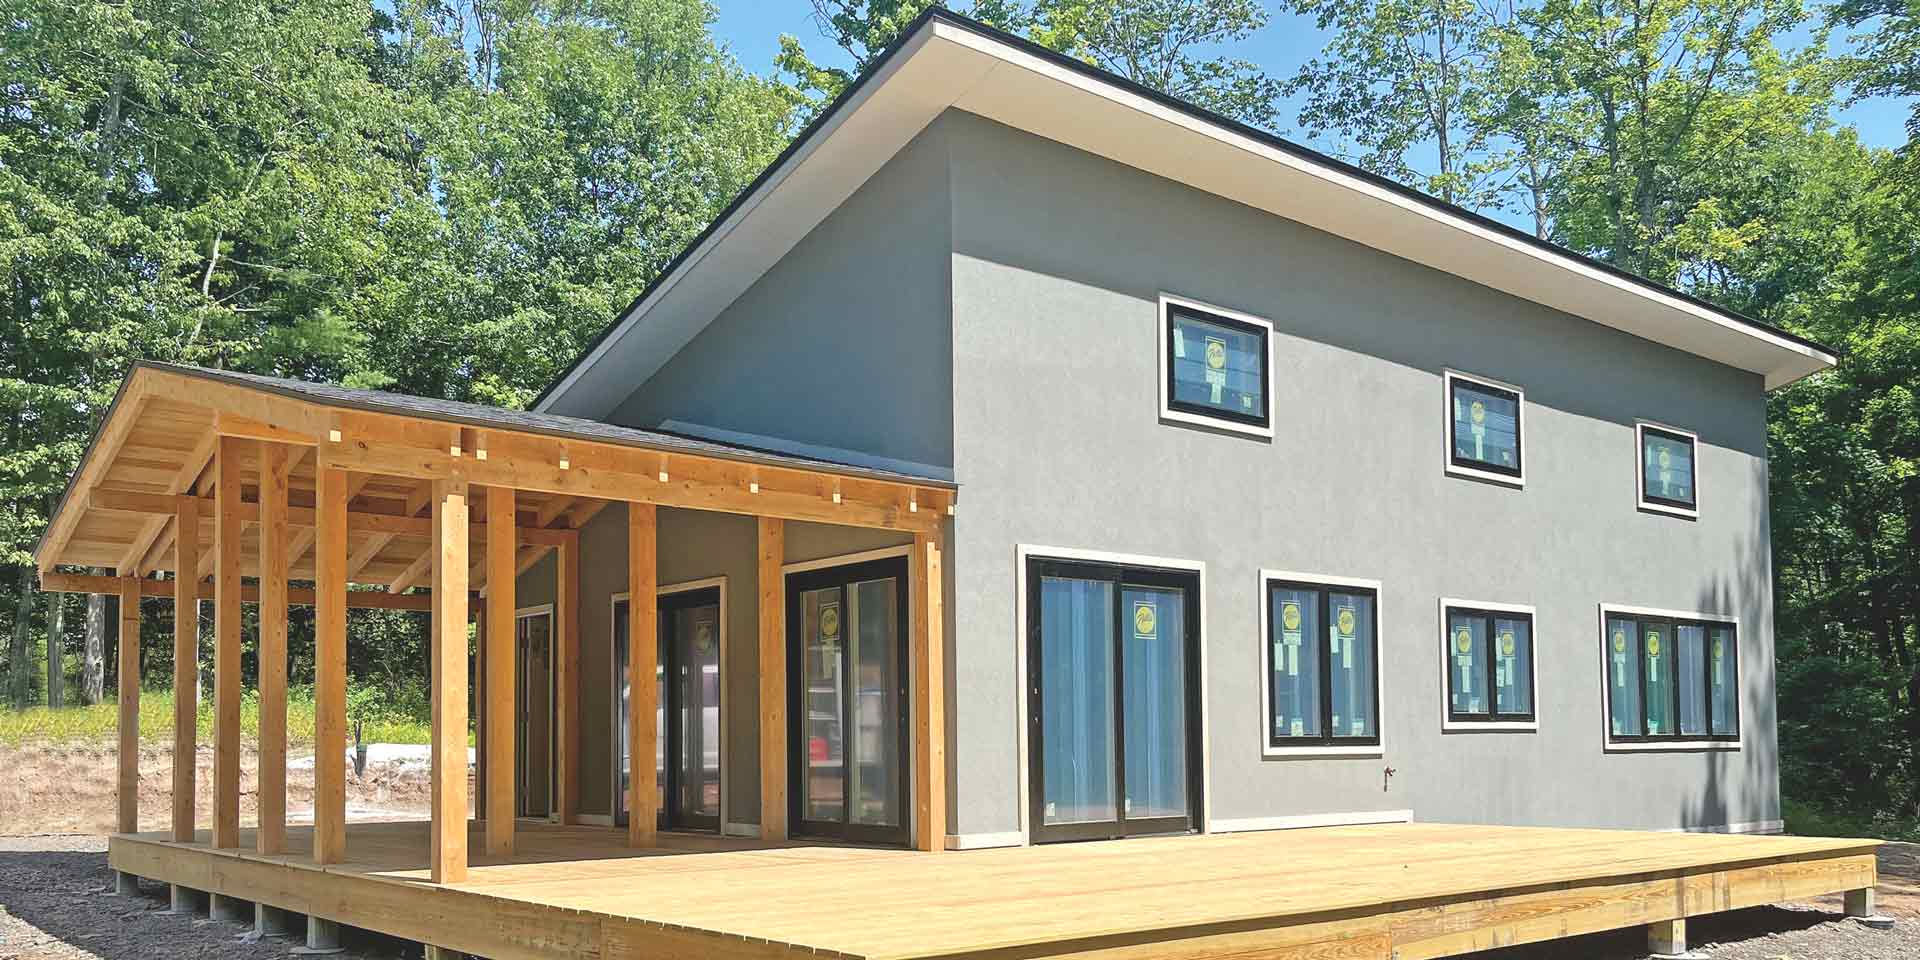 Net Zero Carbon Neutral Home Exterior South Facade